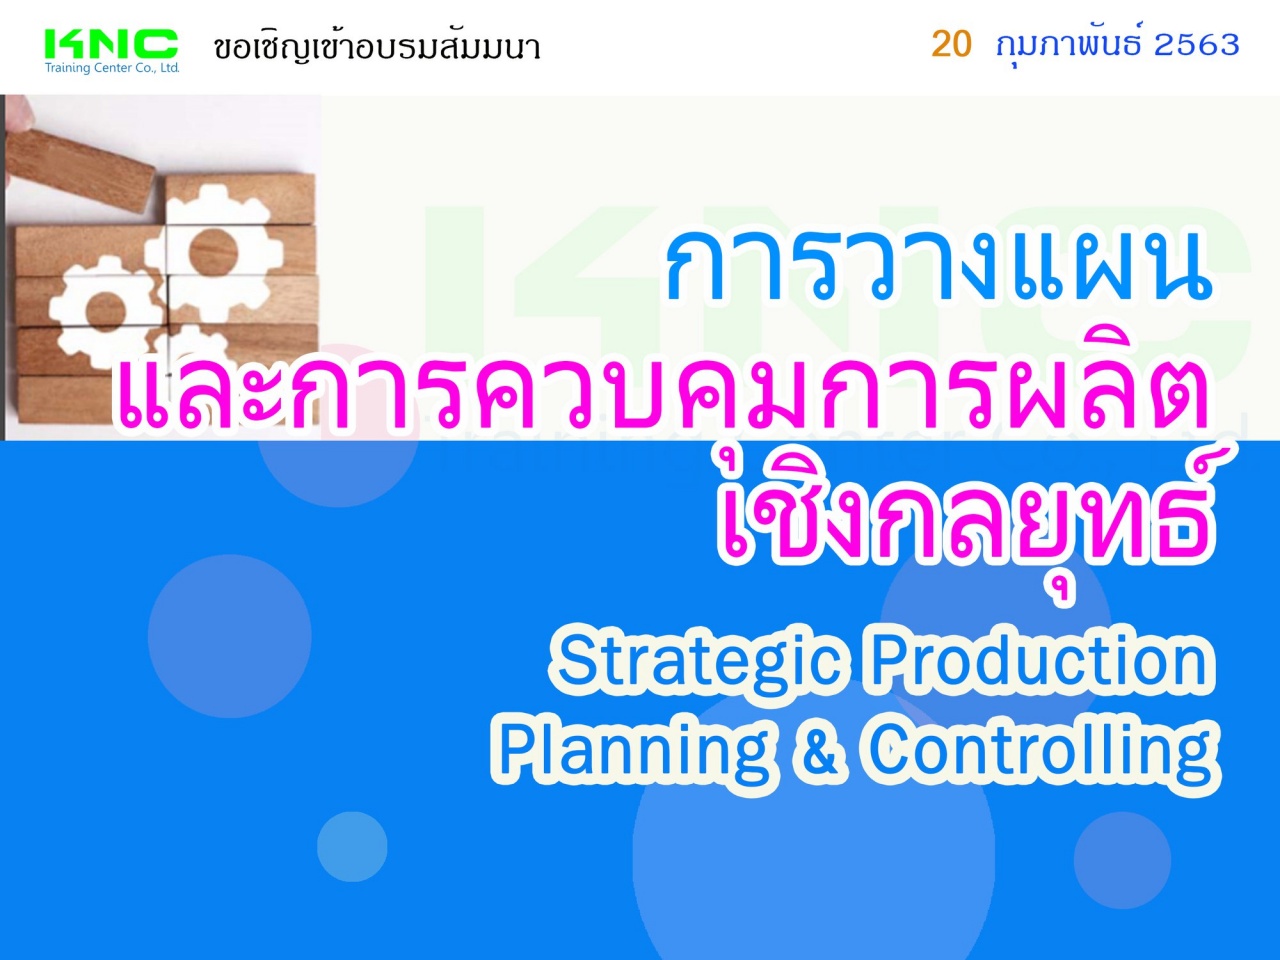 การวางแผนและการควบคุมการผลิตเชิงกลยุทธ์ (Strategic Production Planning & Controlling)